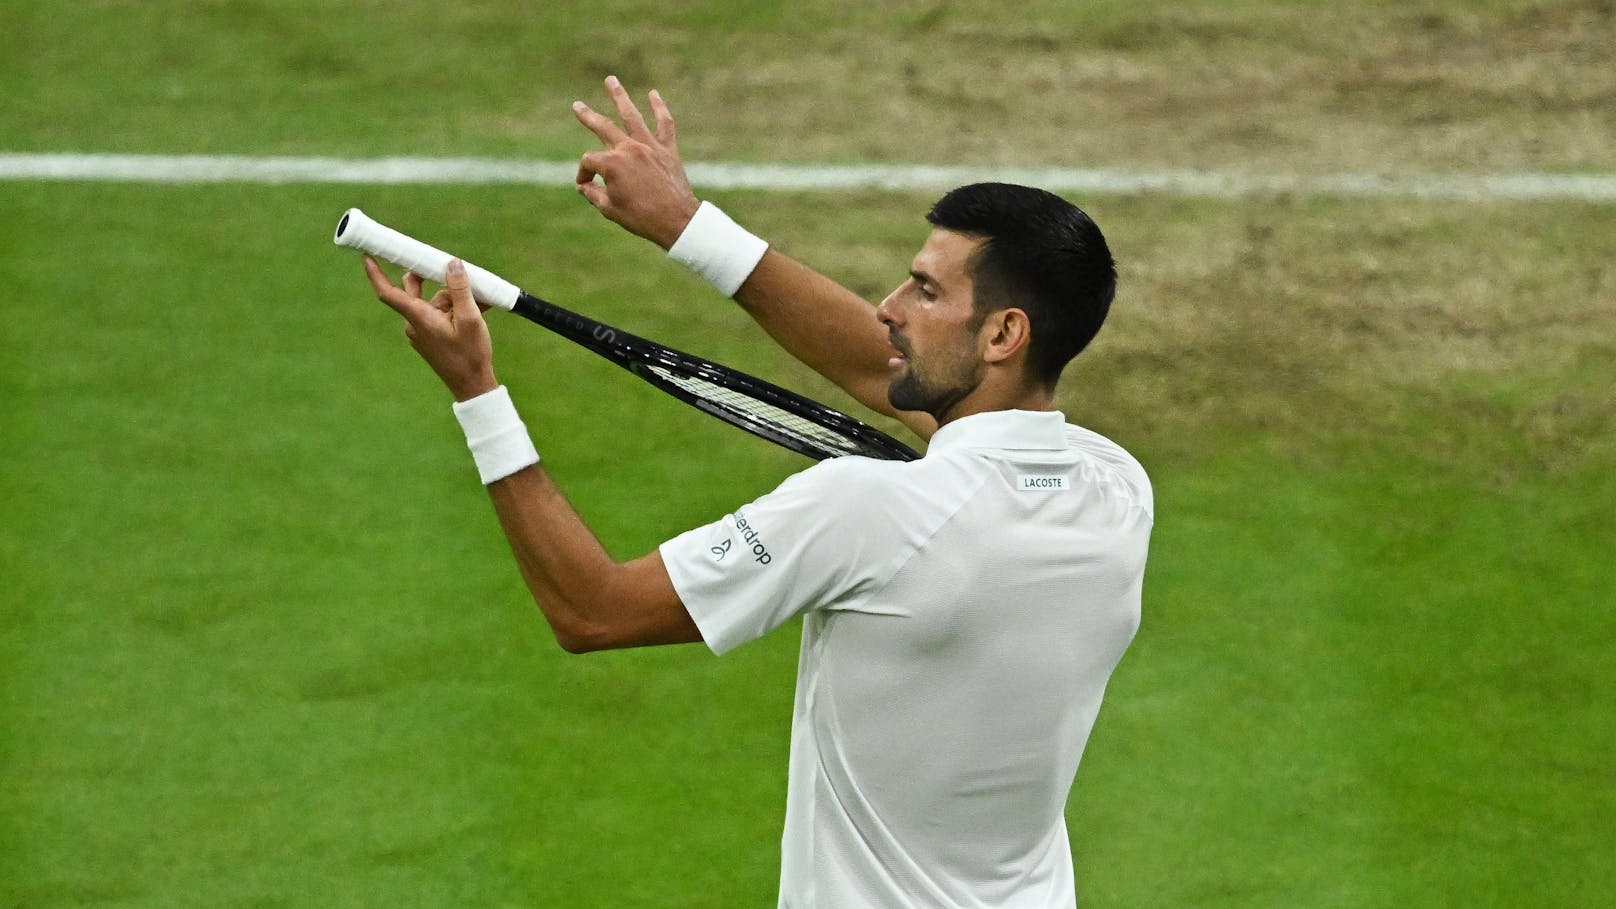 Gegner verletzt! Djokovic kampflos im Halbfinale